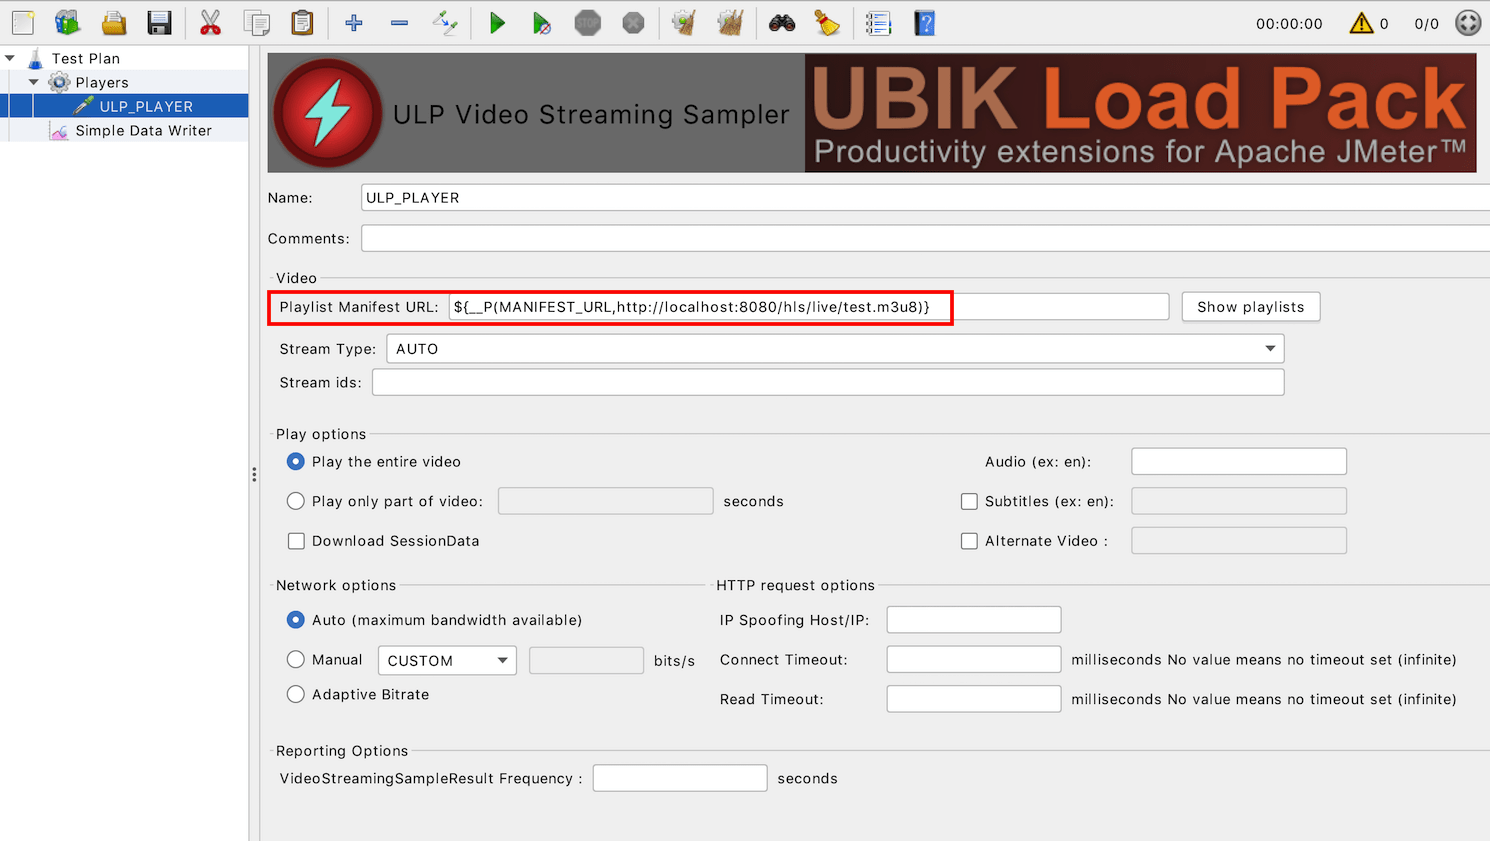 UbikLoadPack Video Sampler configuration